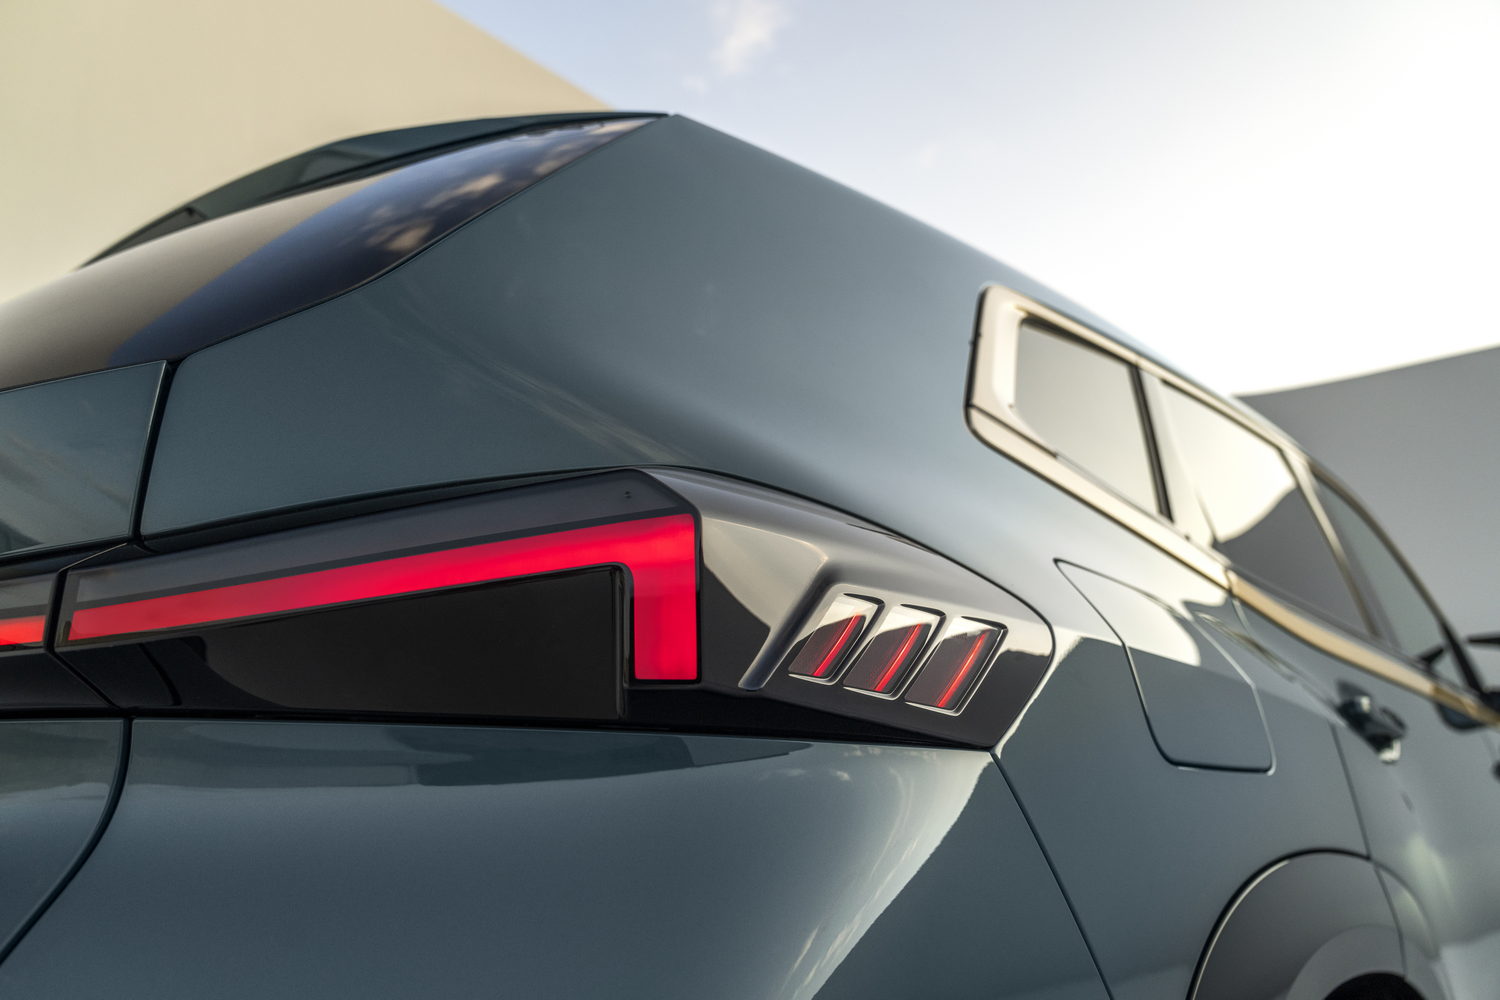 Hybrid BMW XM revealed in full